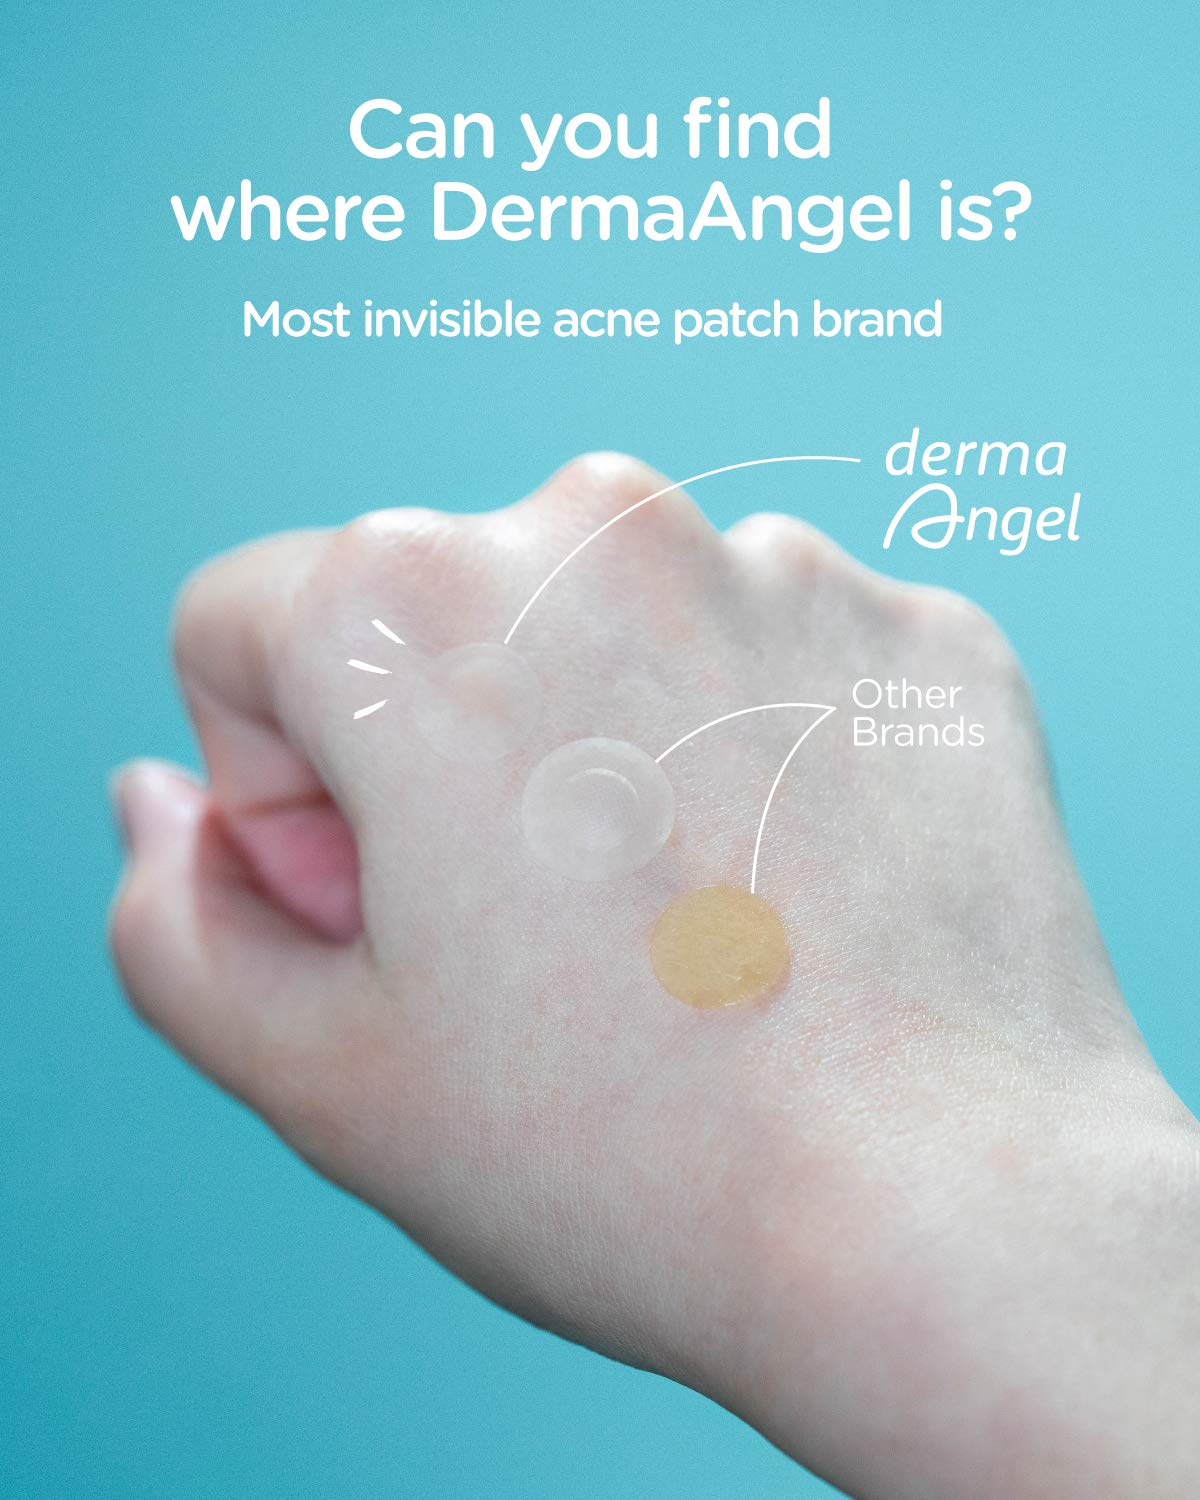 DermaAngel Ultra Invisible Acne Pimple Patch Beauty DermaAngel   